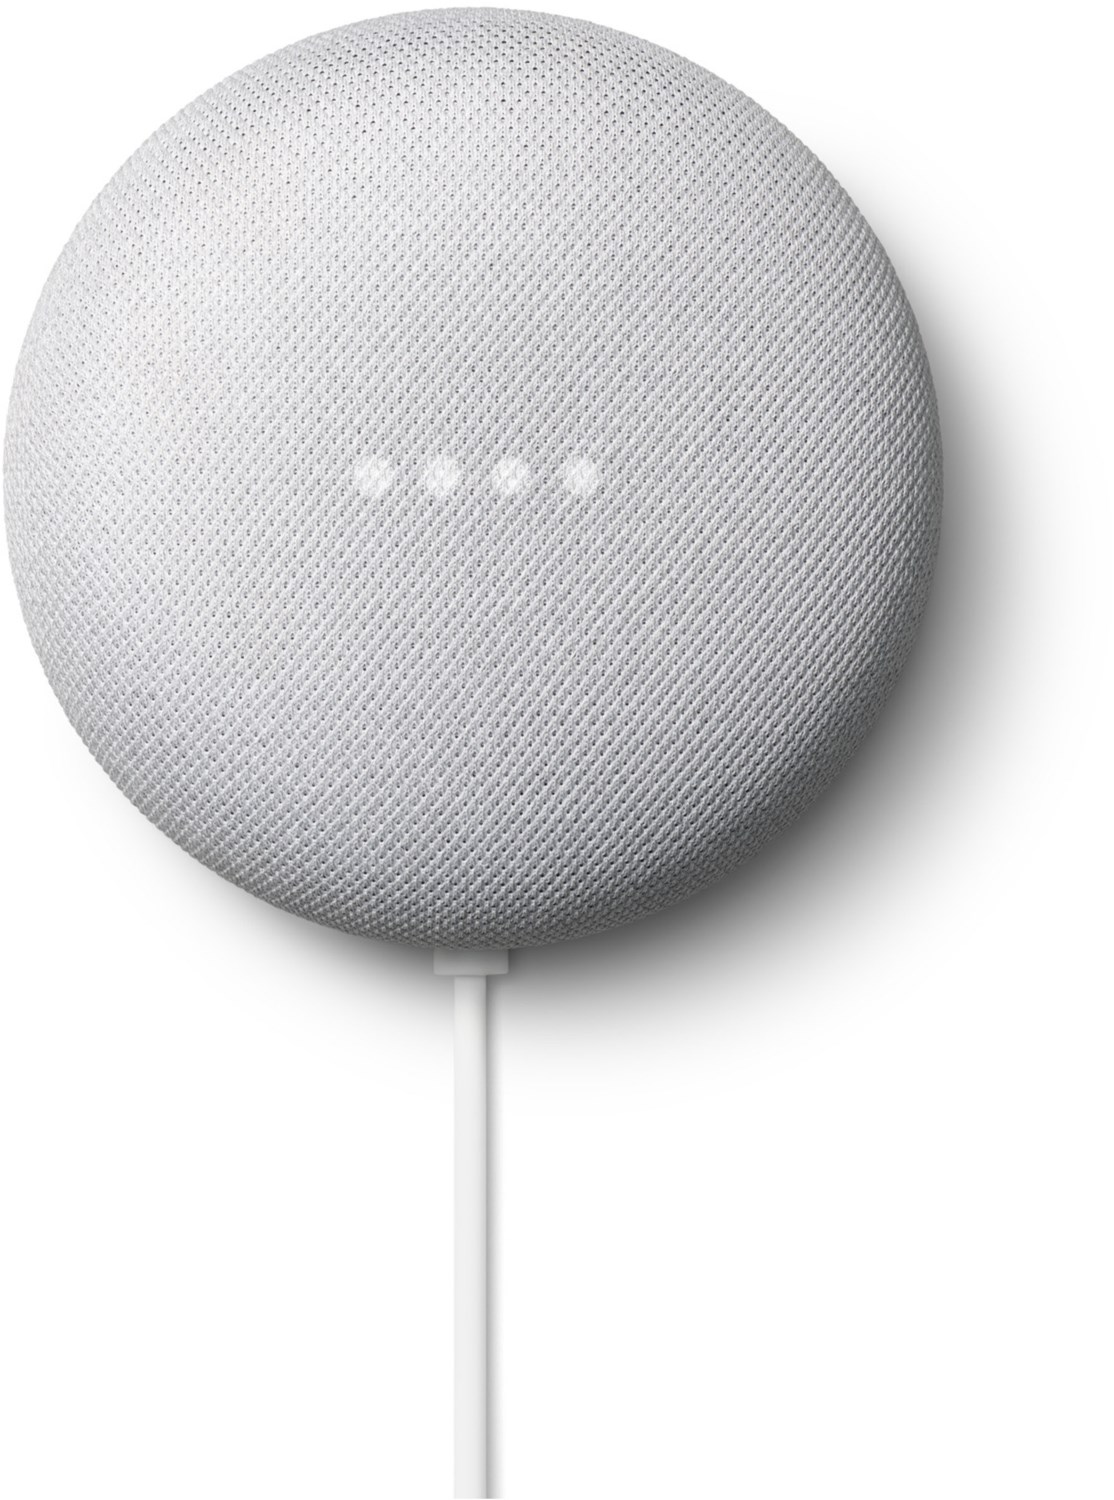 Image of Nest Mini Smart Speaker kreide